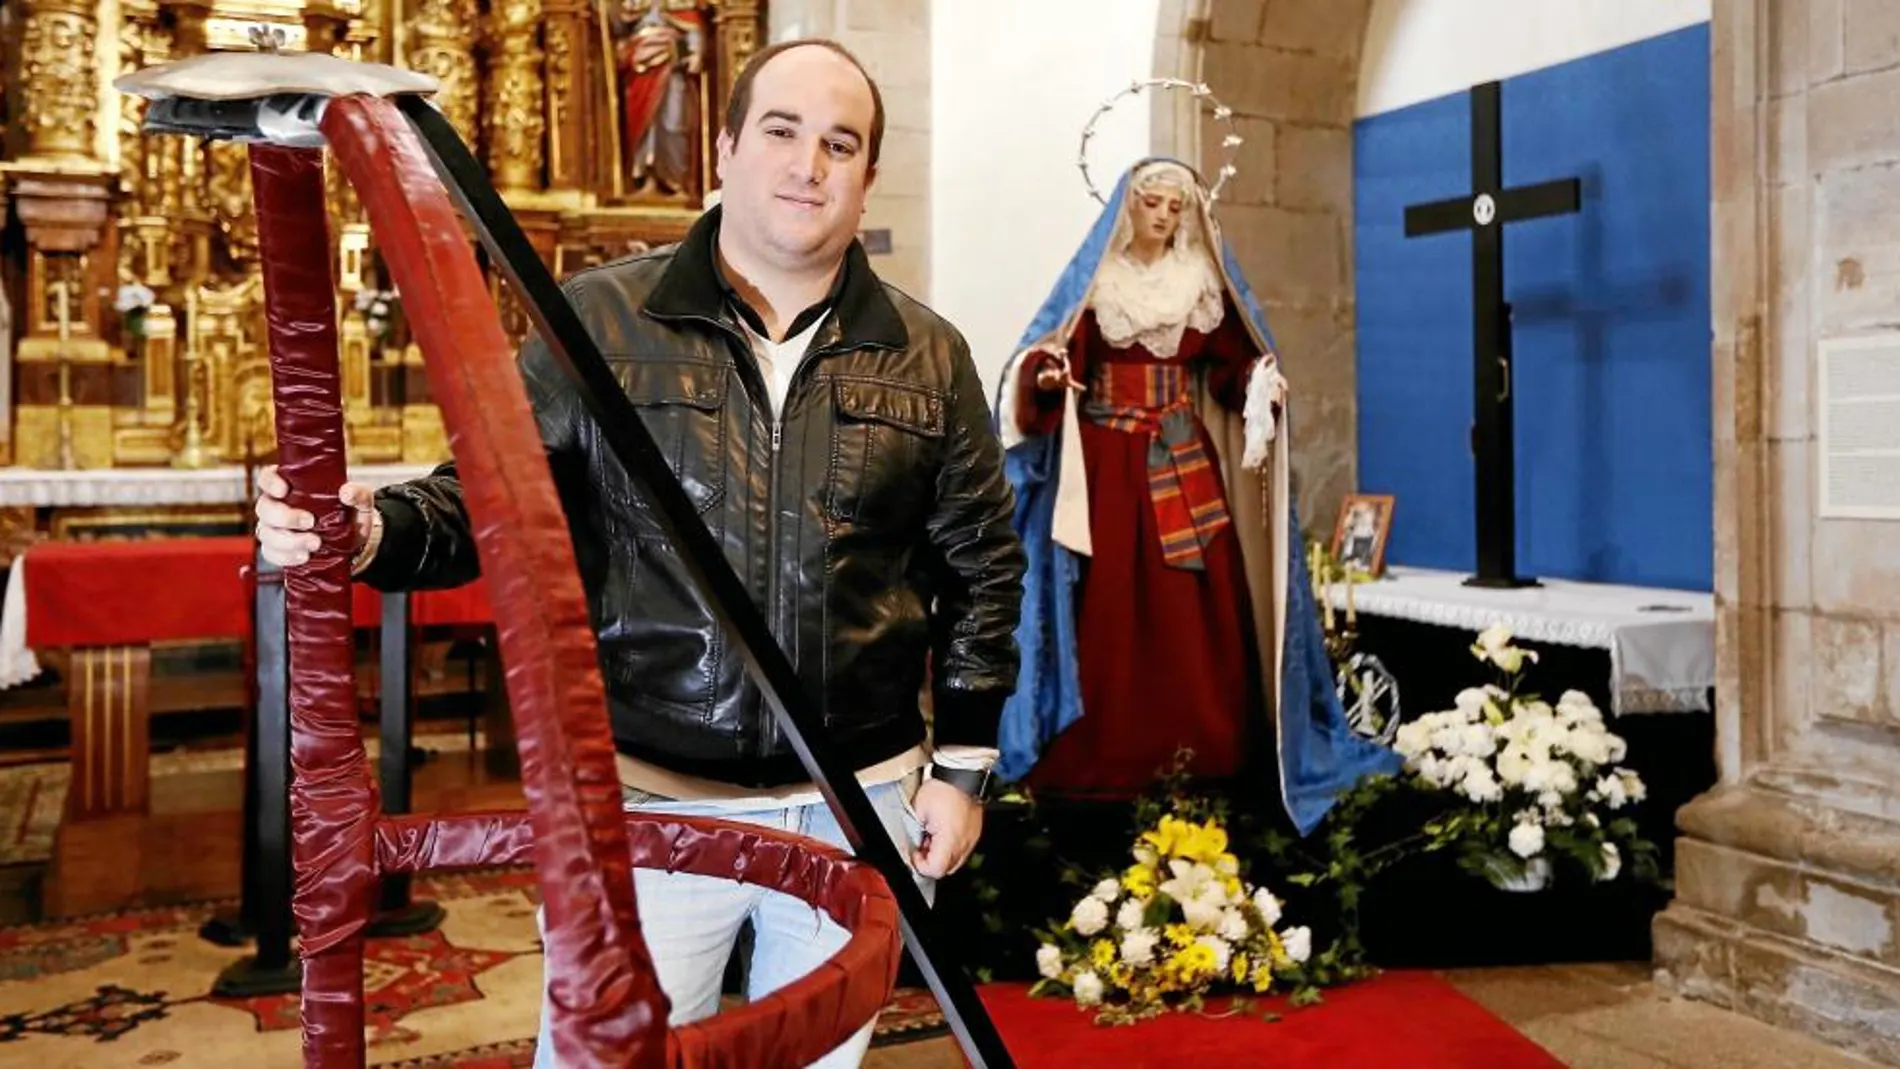 La Semana Santa de Compostela ha ido creciendo exponencialmente en los últimos años. Hace ocho, un grupo de jóvenes fundaba la Cofradía de la Humildad. Hoy, es una más